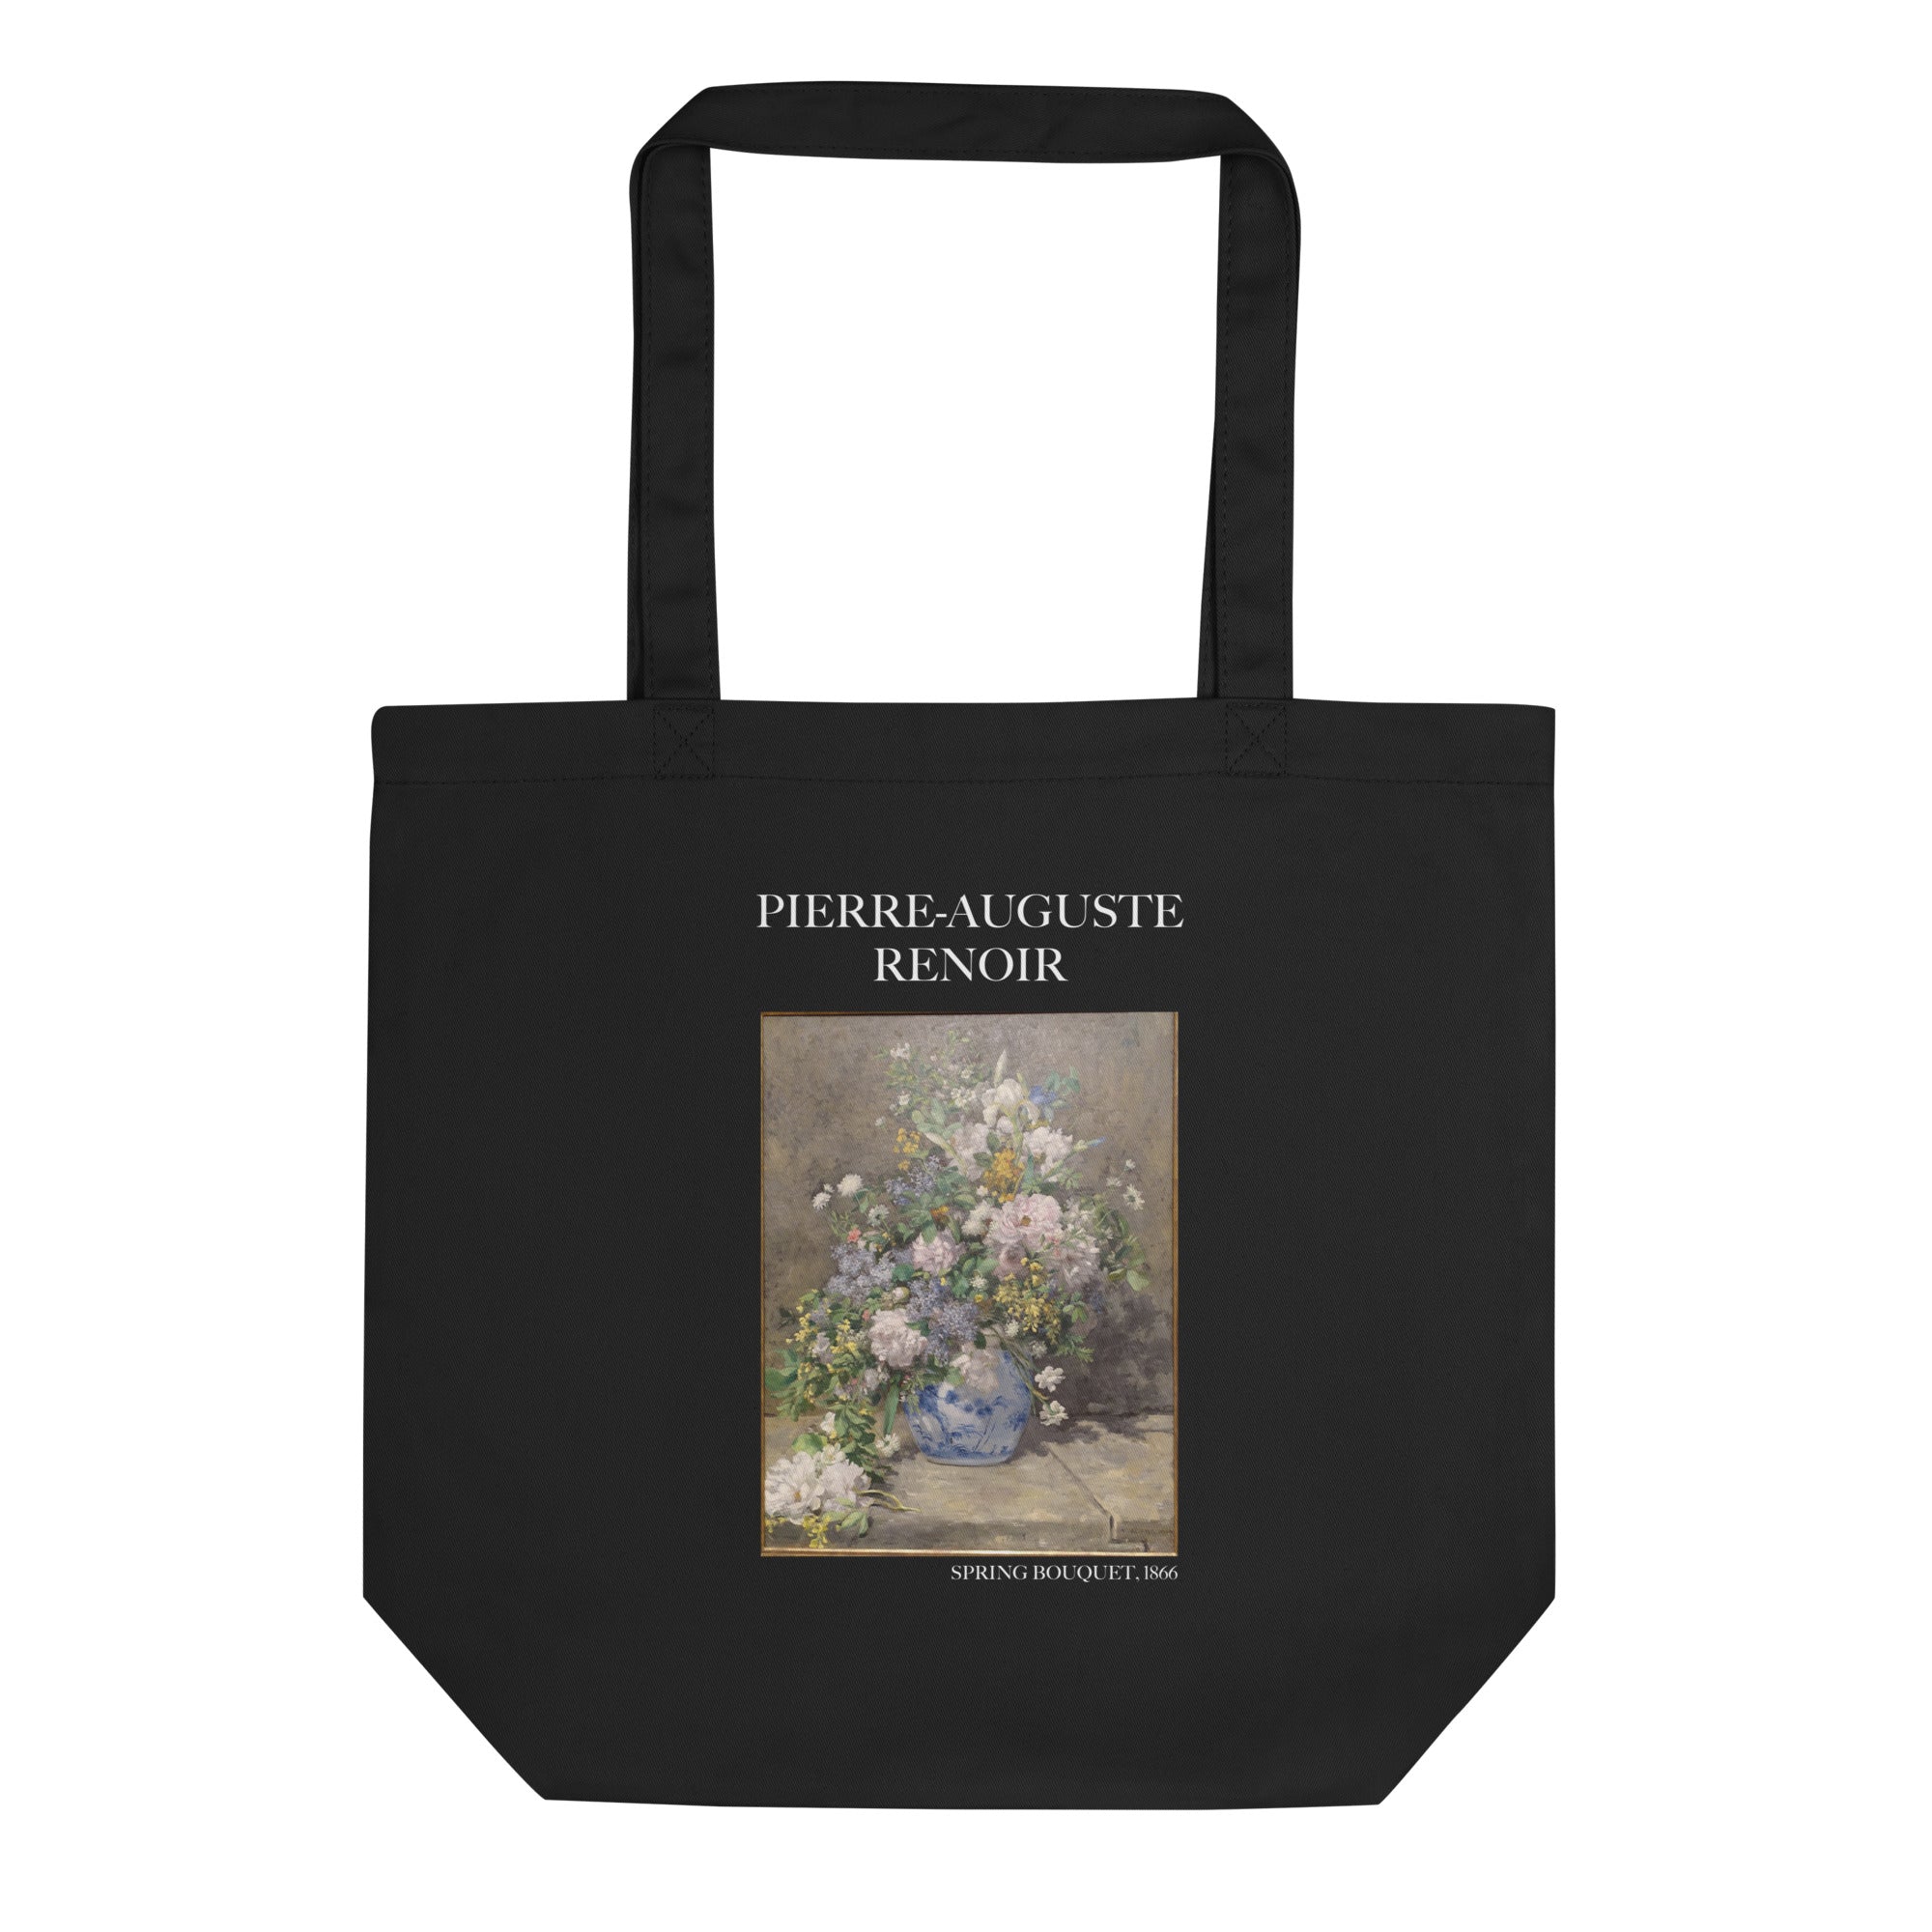 Pierre-Auguste Renoir 'Spring Bouquet' Famous Painting Totebag | Eco Friendly Art Tote Bag